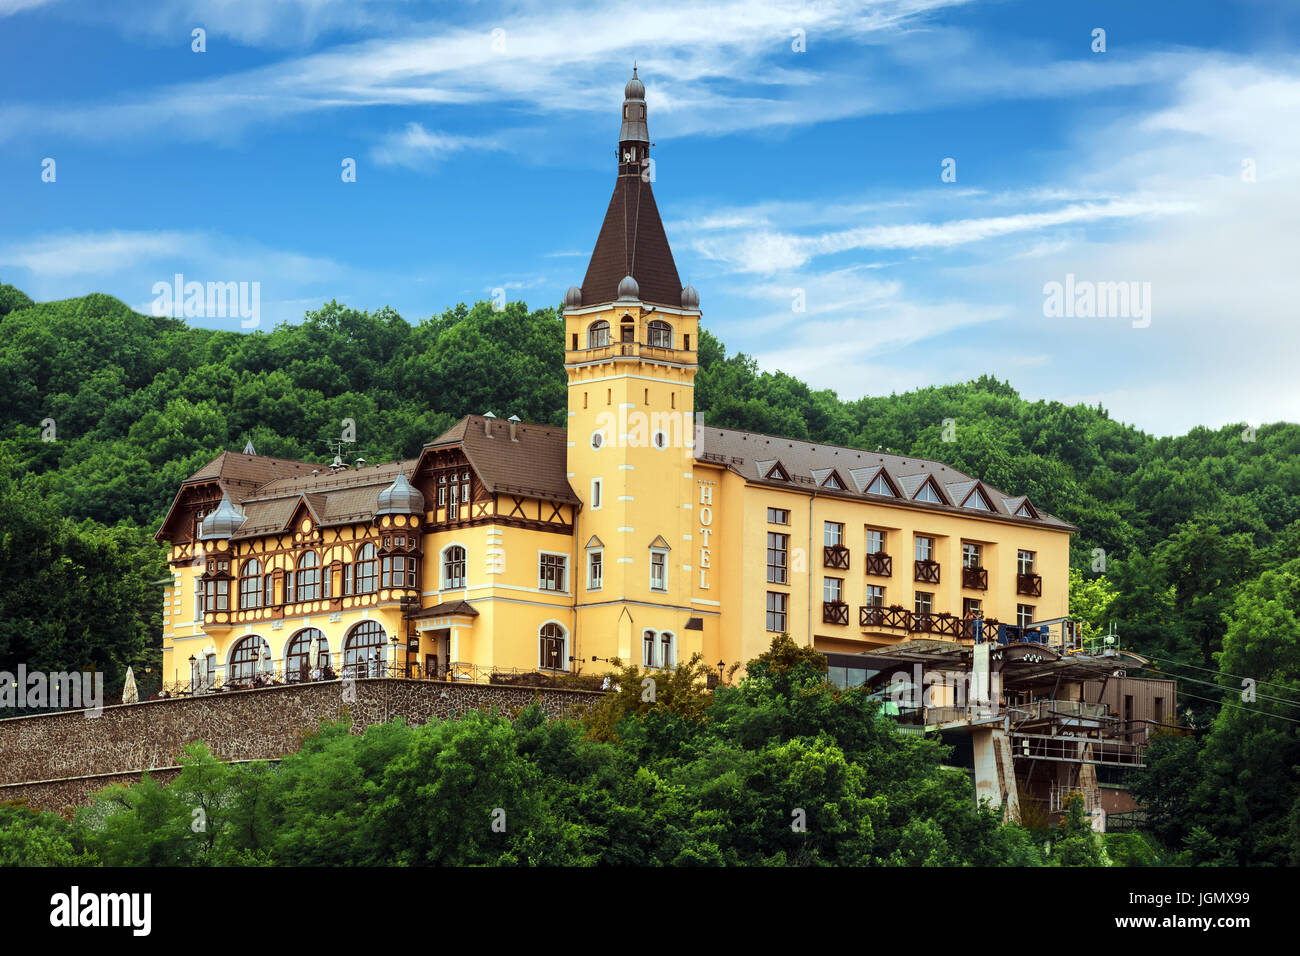 Chateau Vetruse, Usti nad Labem, en Bohême du Nord, République Tchèque, Europe Banque D'Images